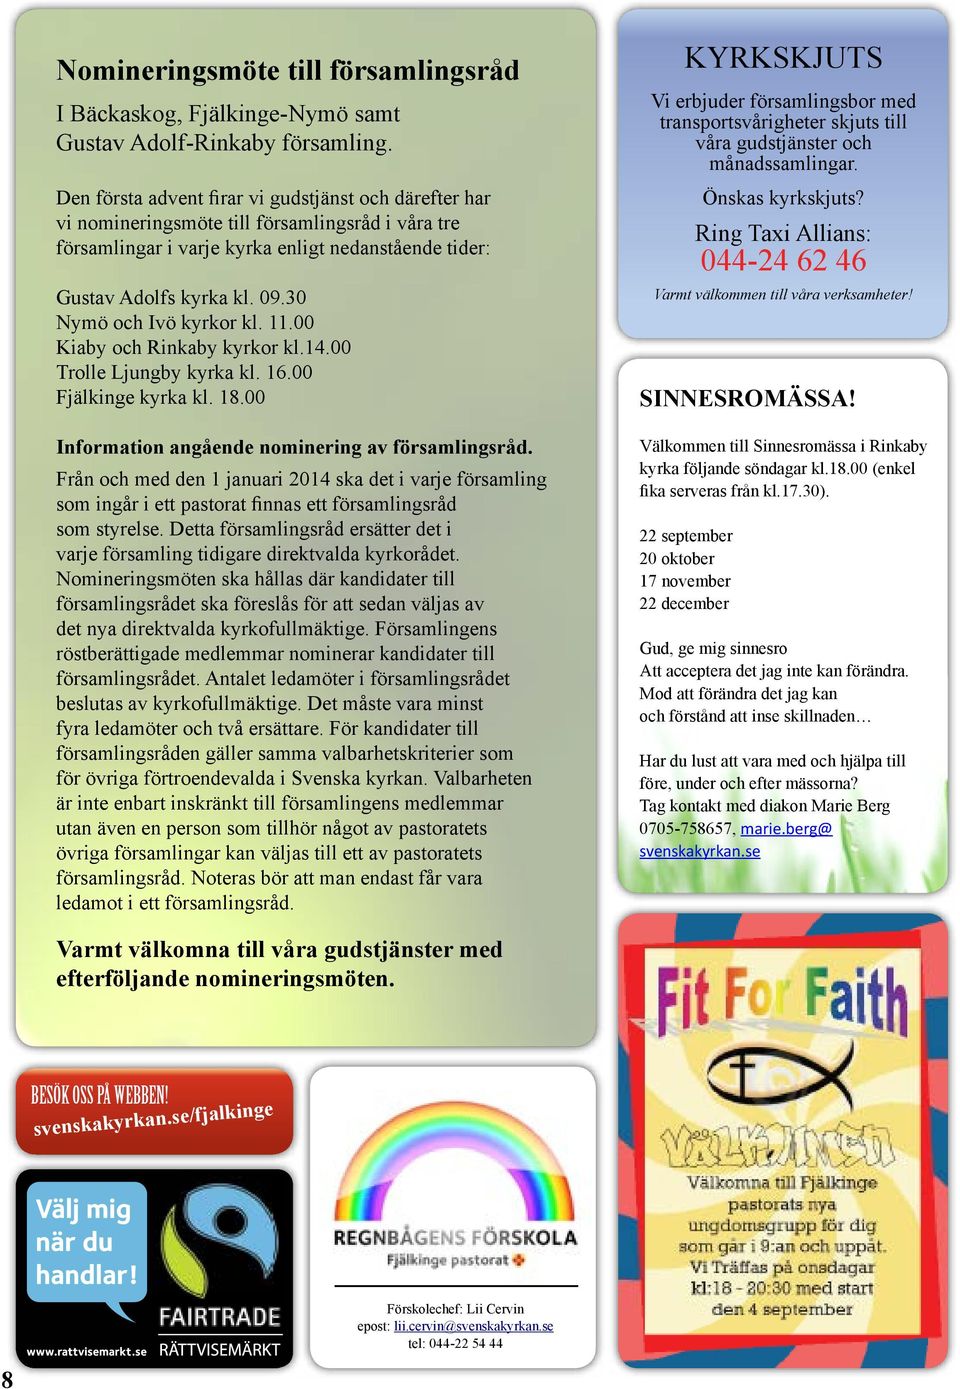 30 Nymö och Ivö kyrkor kl. 11.00 Kiaby och Rinkaby kyrkor kl.14.00 Trolle Ljungby kyrka kl. 16.00 Fjälkinge kyrka kl. 18.00 Information angående nominering av församlingsråd.